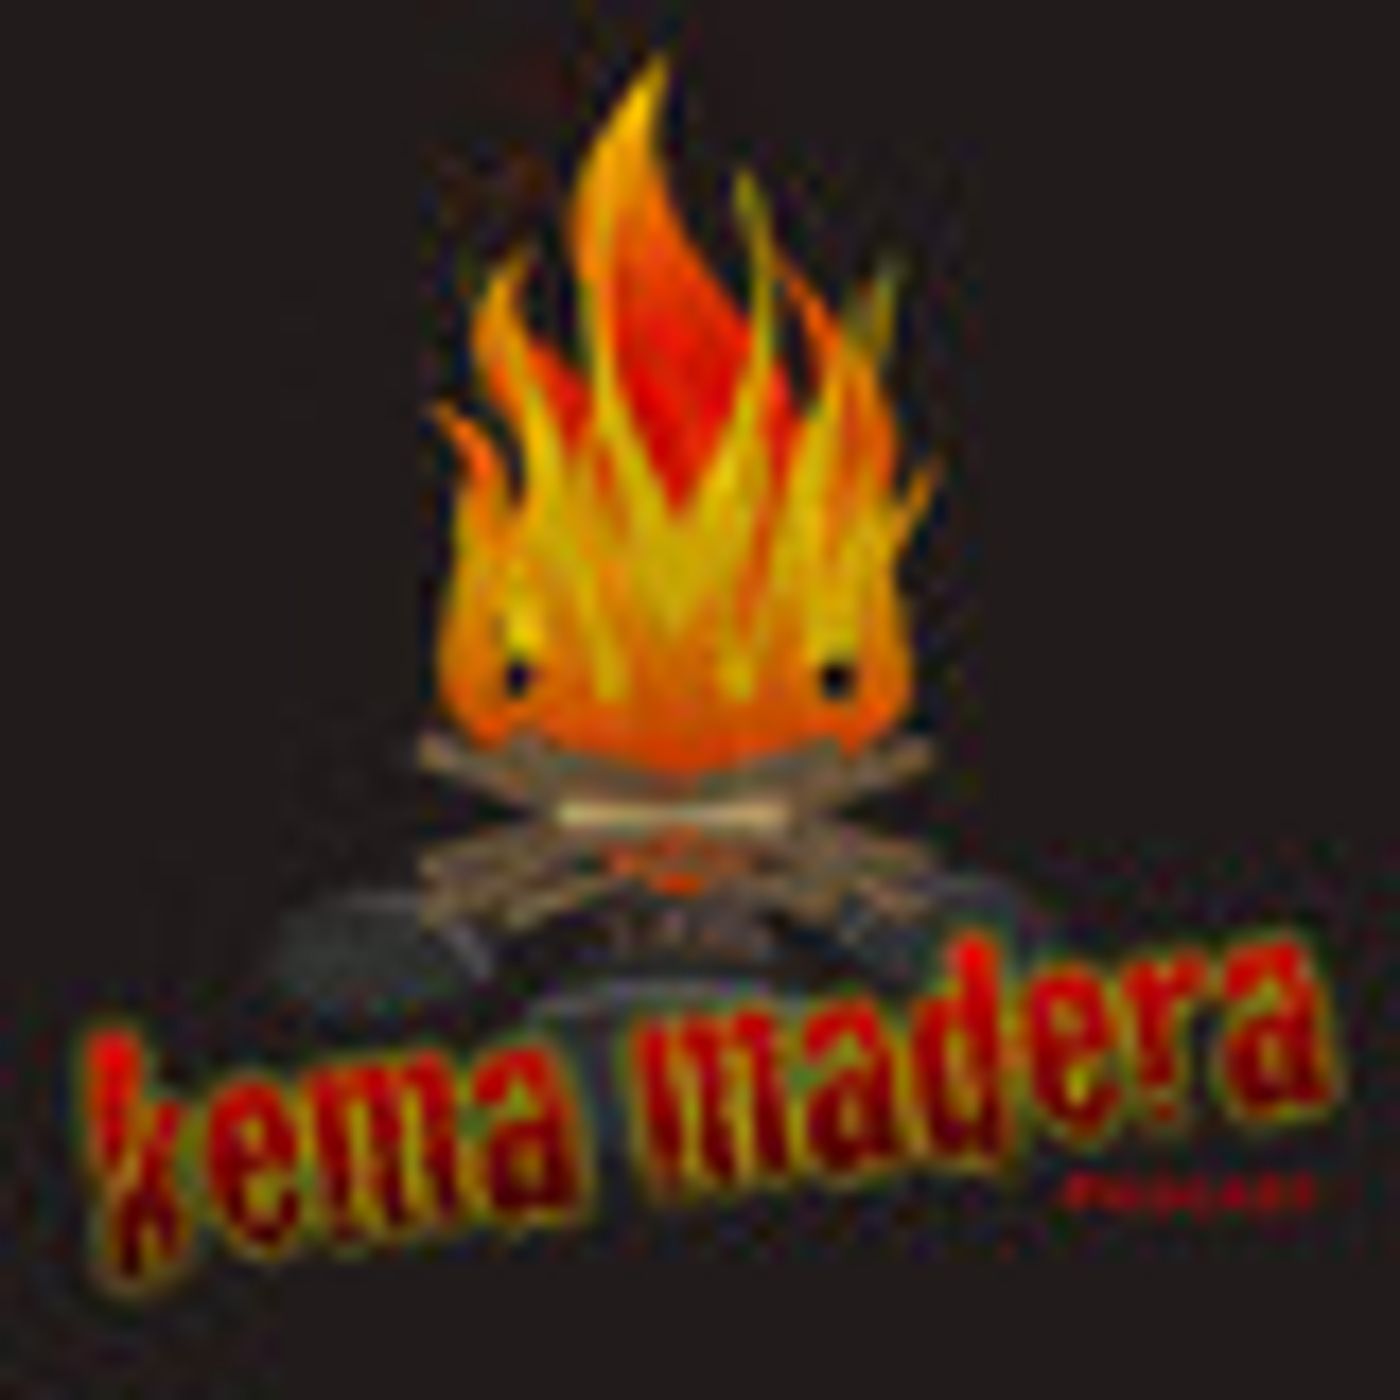 Kema Madera Podcast